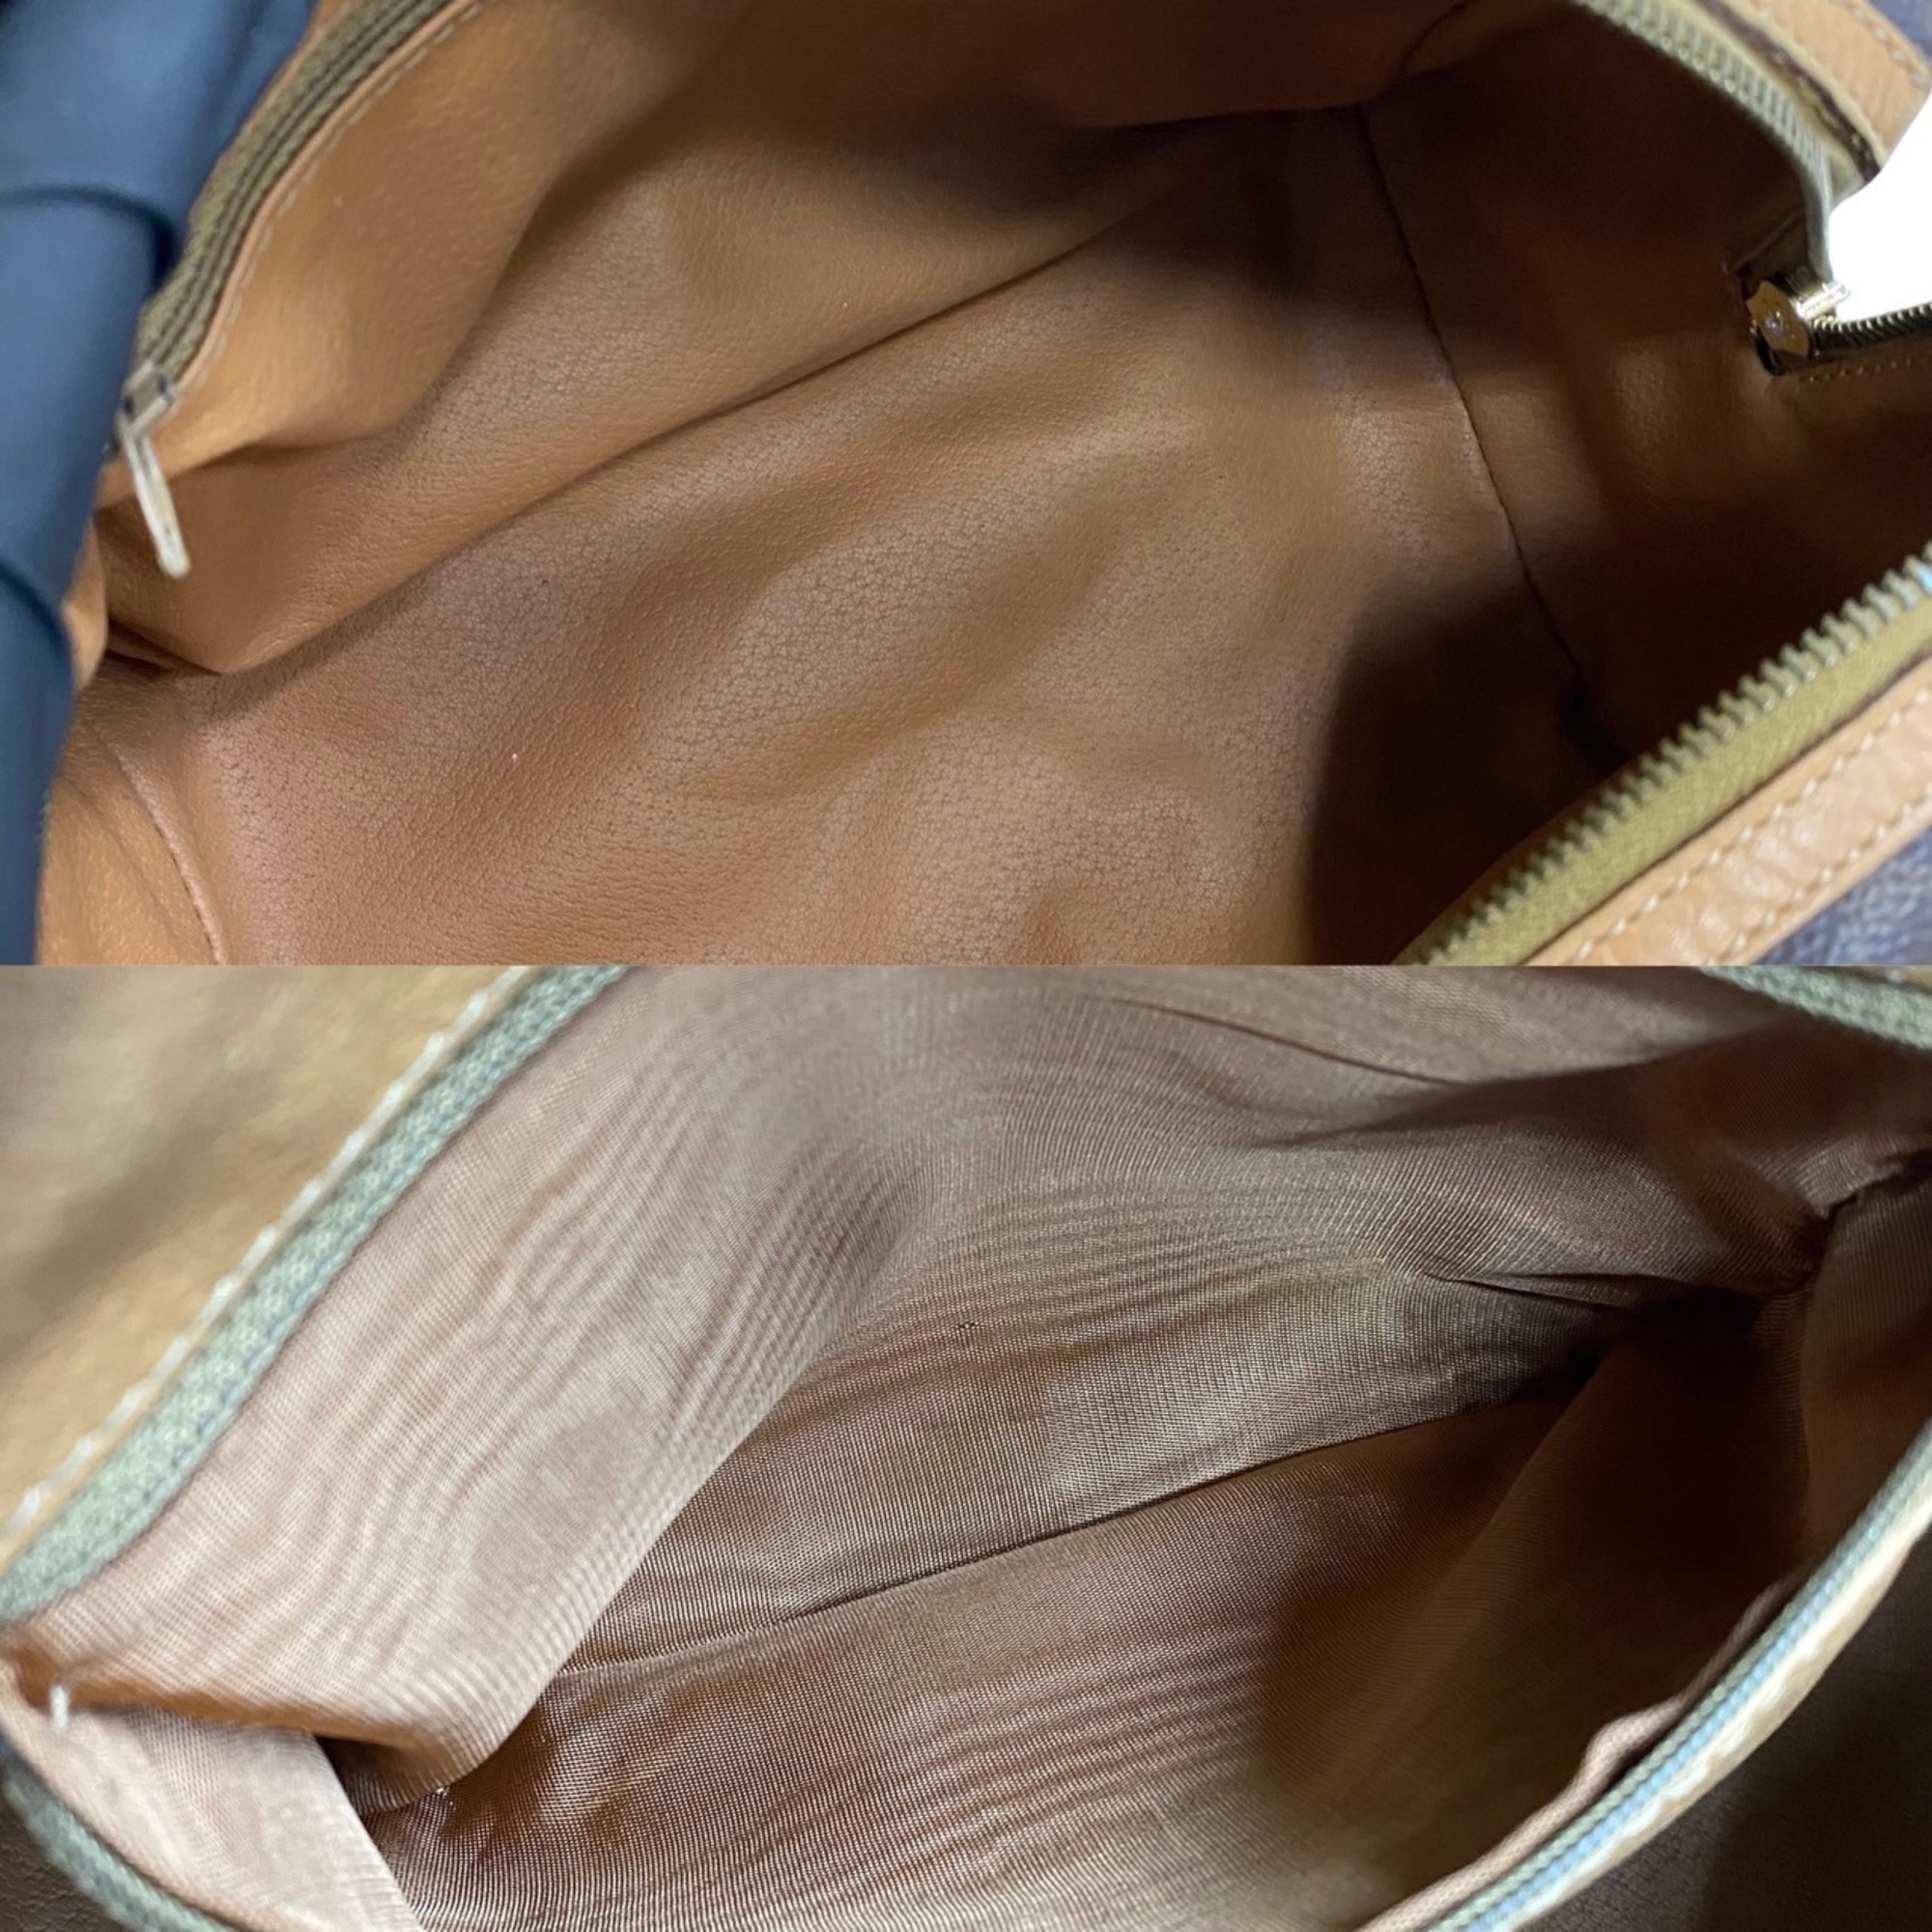 CELINE Macadam Blason Triomphe Leather 2way Handbag Shoulder Bag Brown 14615